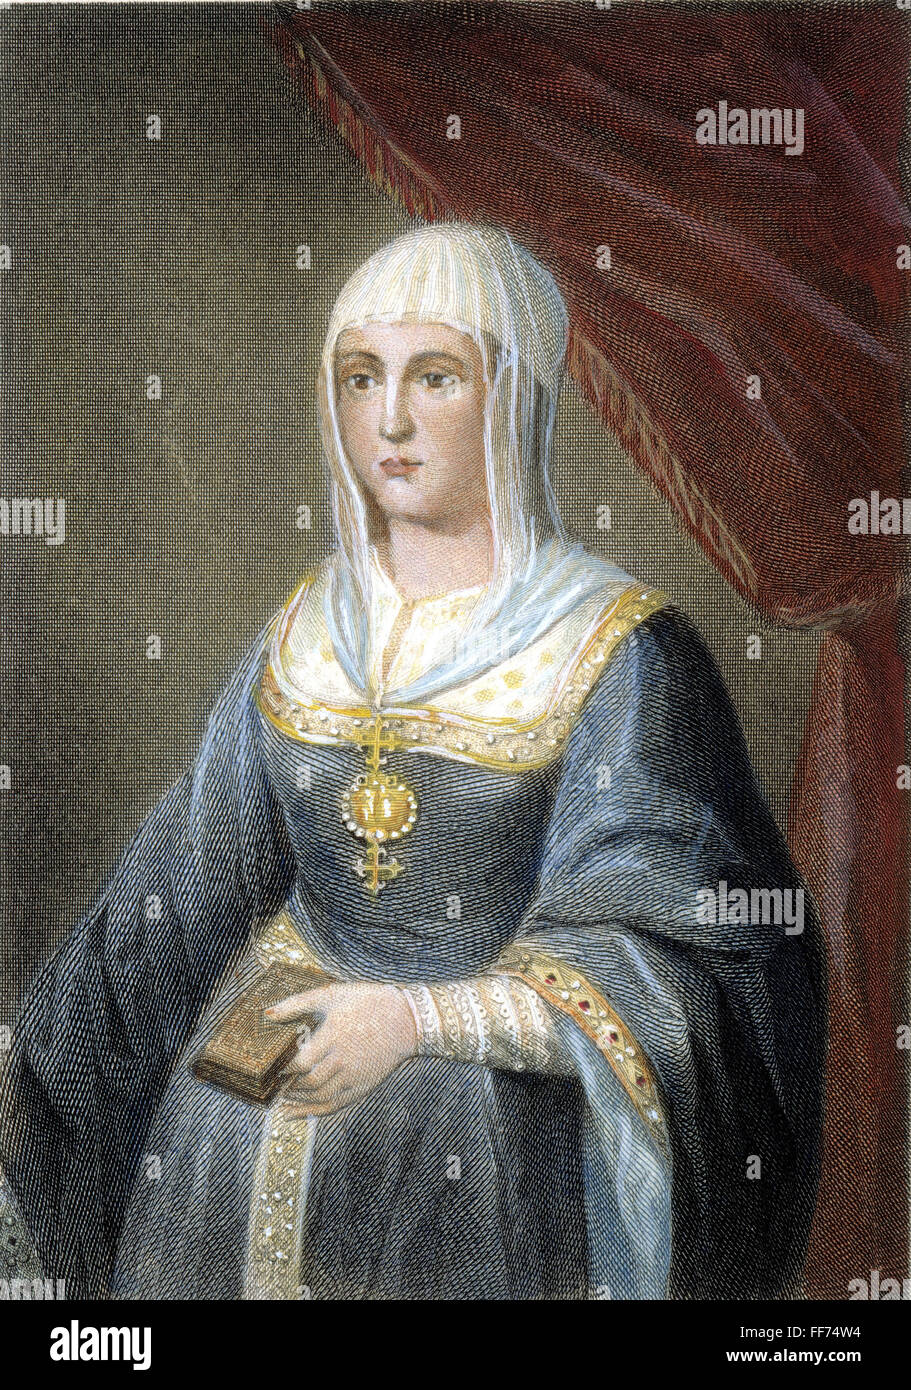 Königin ISABELLA ich /nof Kastilien und Aragon (1451-1504): Stahl, Gravur, Englisch, 1838. Stockfoto